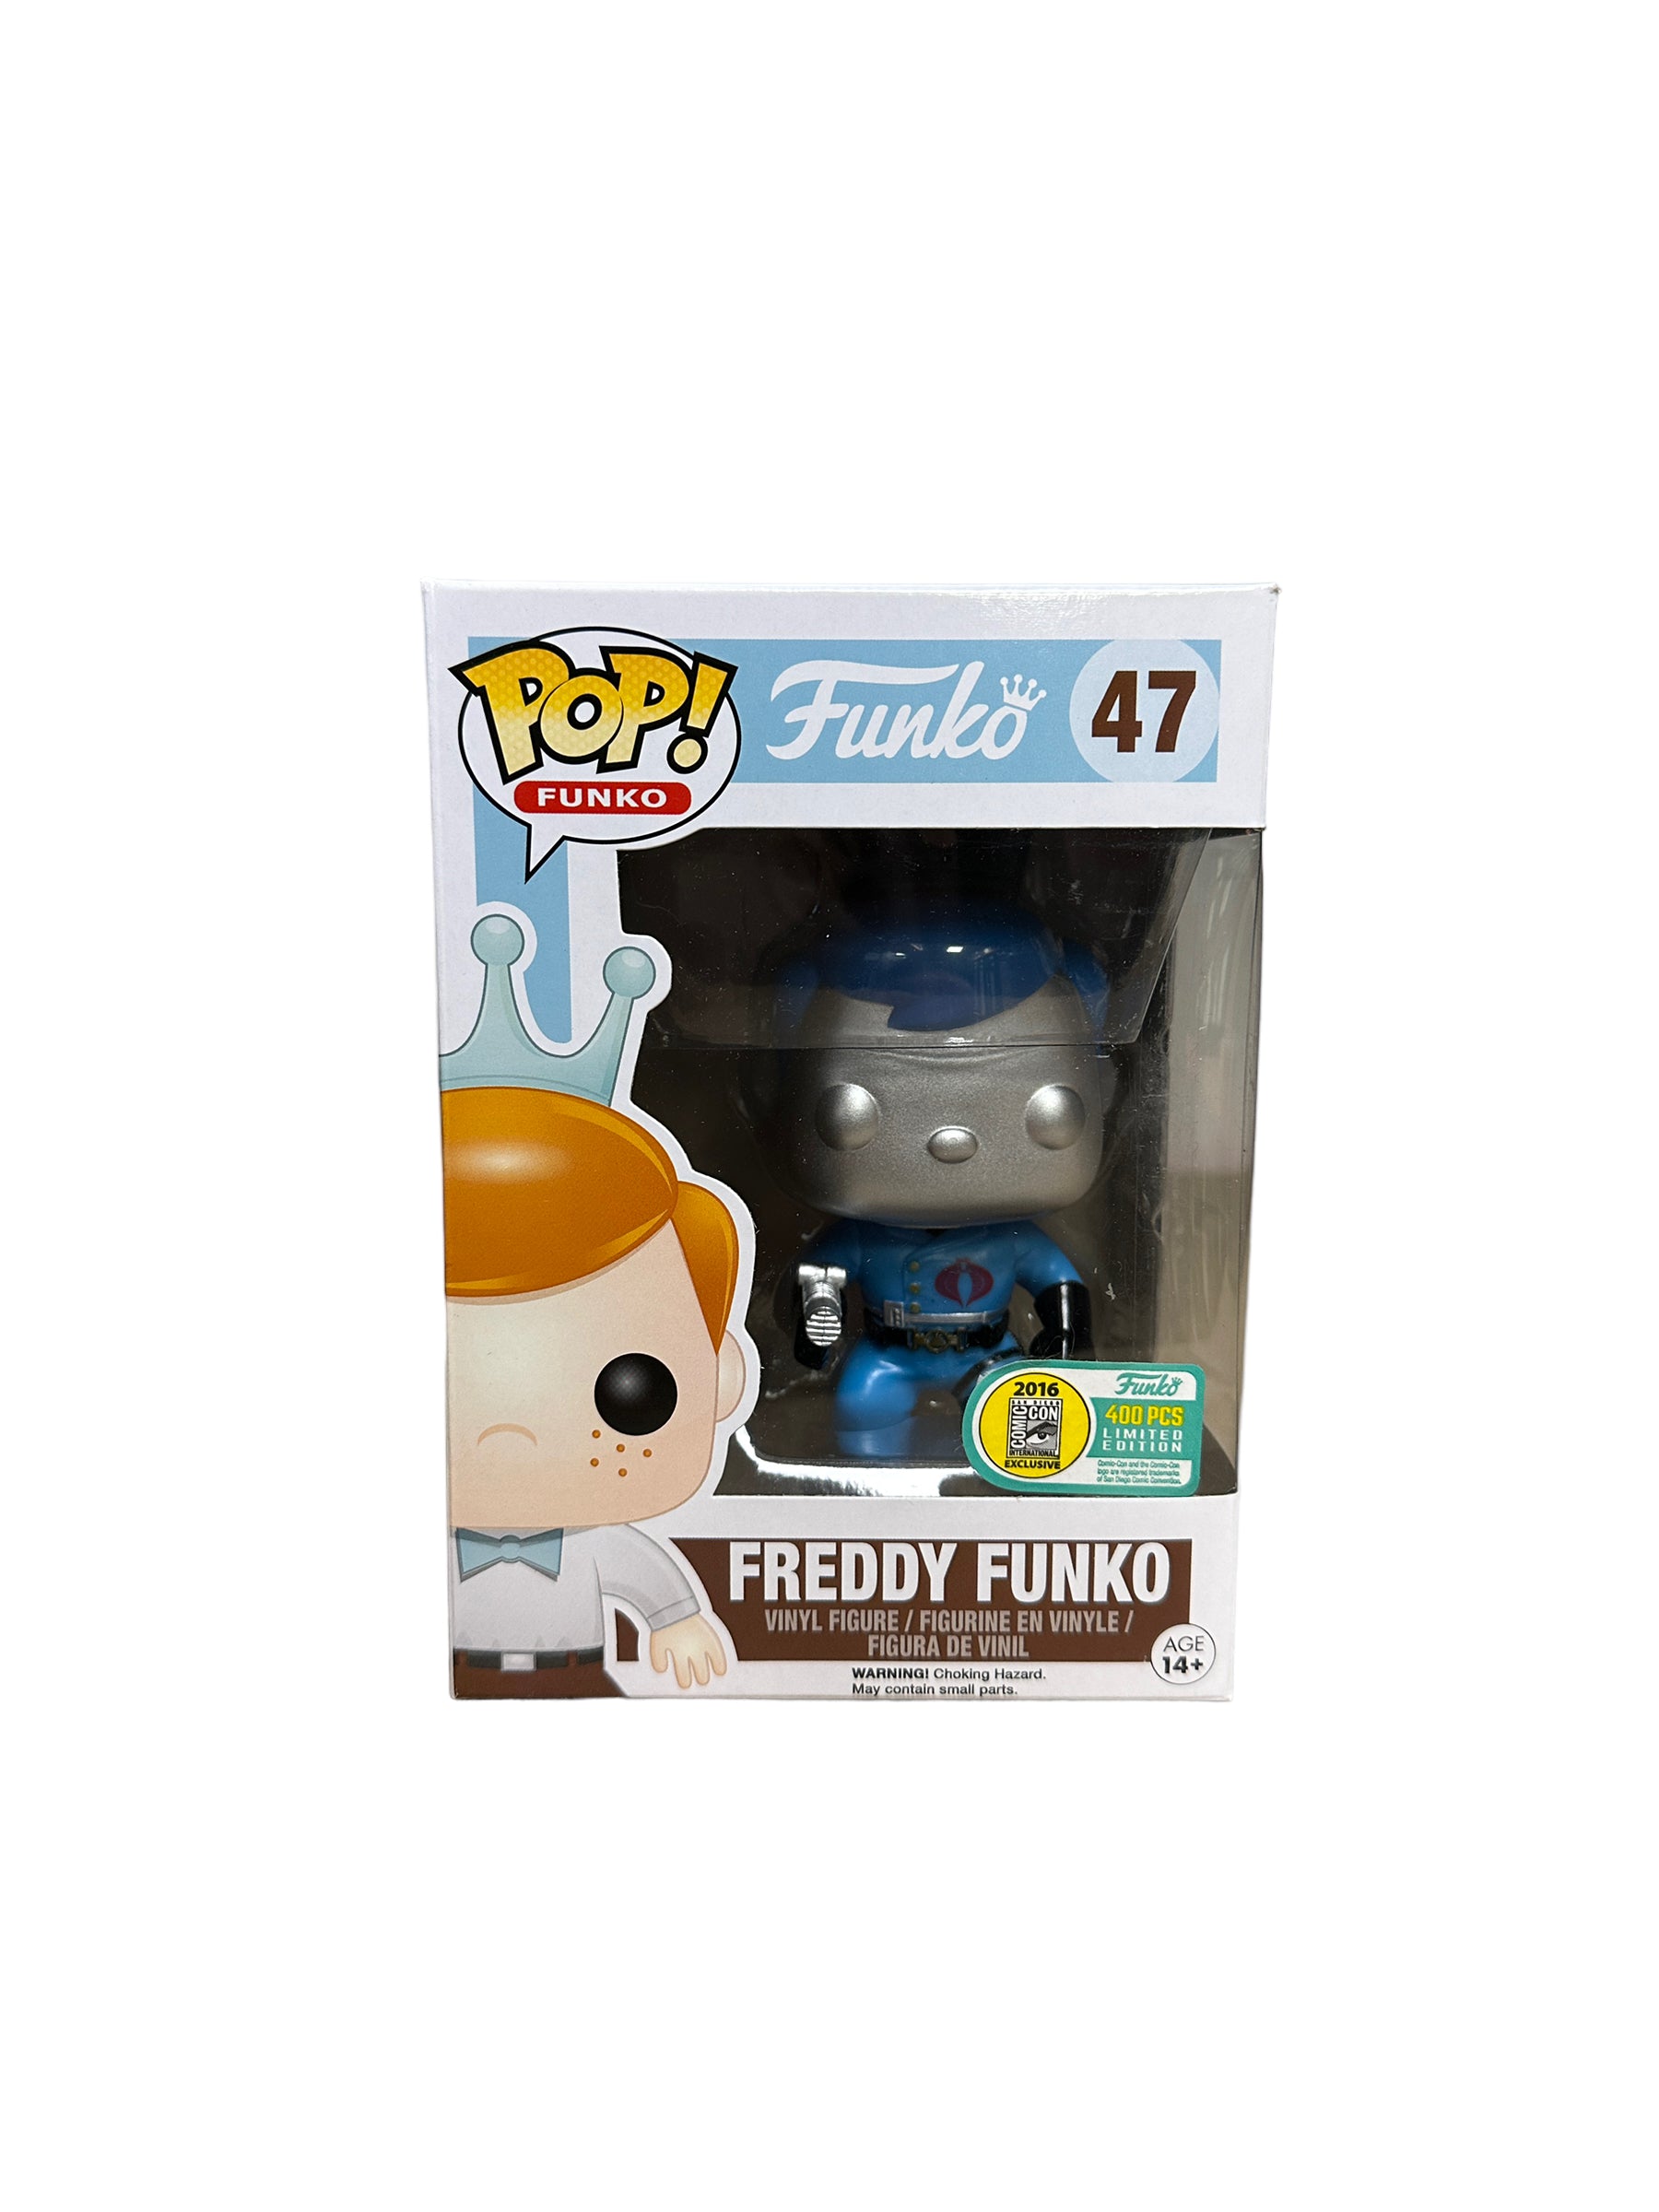 Freddy Funko as Cobra Commander #47 Funko Pop! - SDCC 2016 Exclusive LE400 Pcs - Condition 8/10